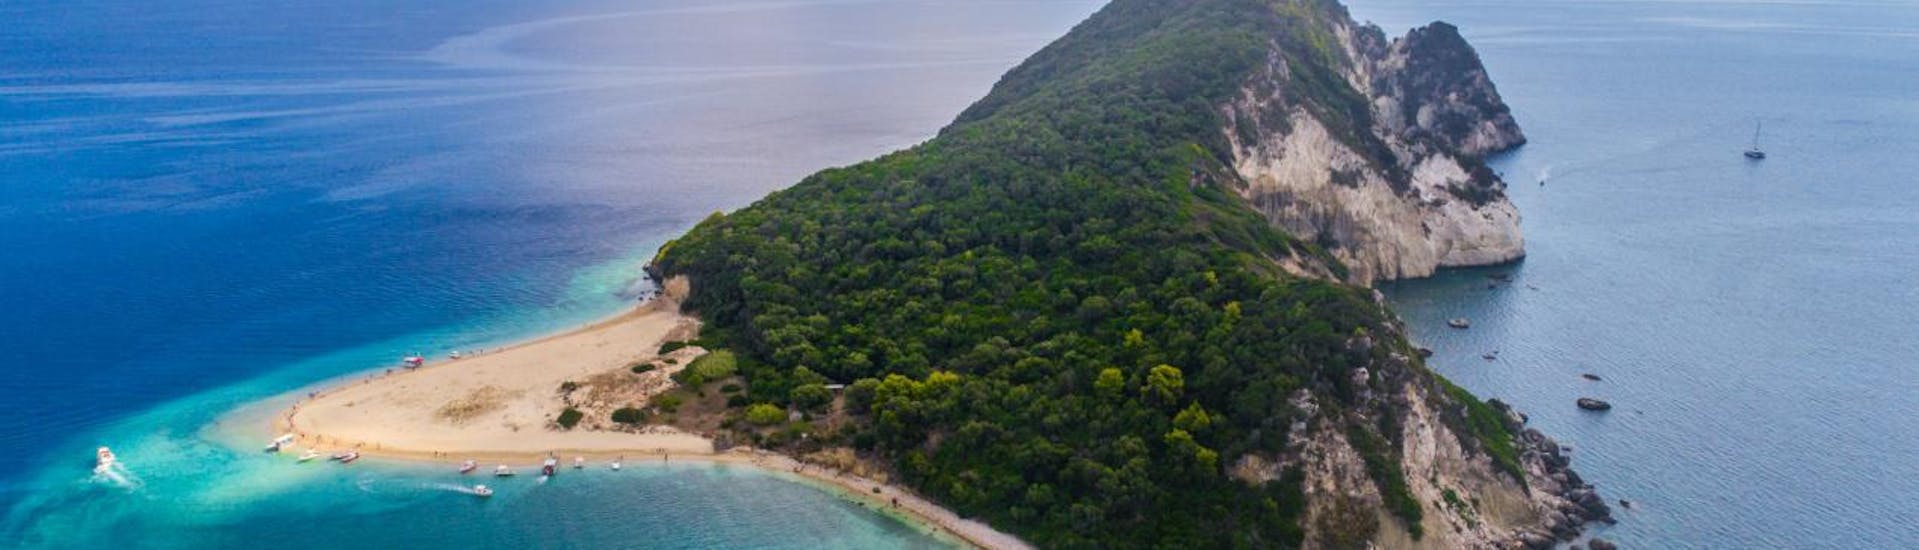 Foto dell'isola delle tartarughe e del mare blu, che potrete visitare presso il noleggio barche ad Agios Sostis - Elite con Traventure Zakynthos.